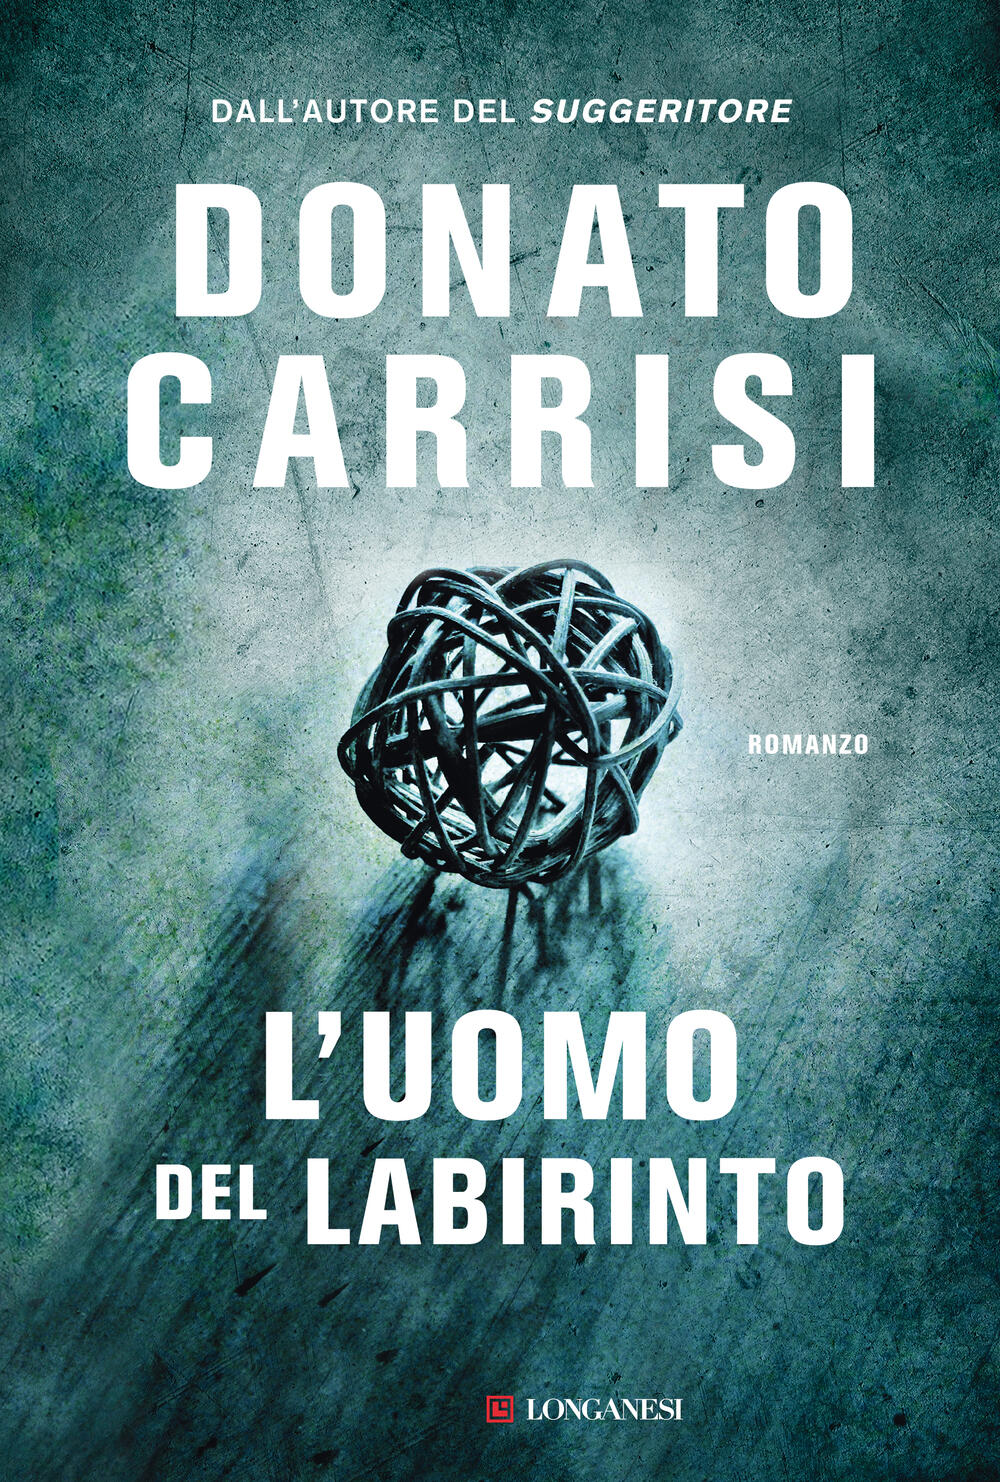 Entrate con Donato Carrisi nella casa delle voci e urlate il vostro nome -  Casa Editrice Longanesi